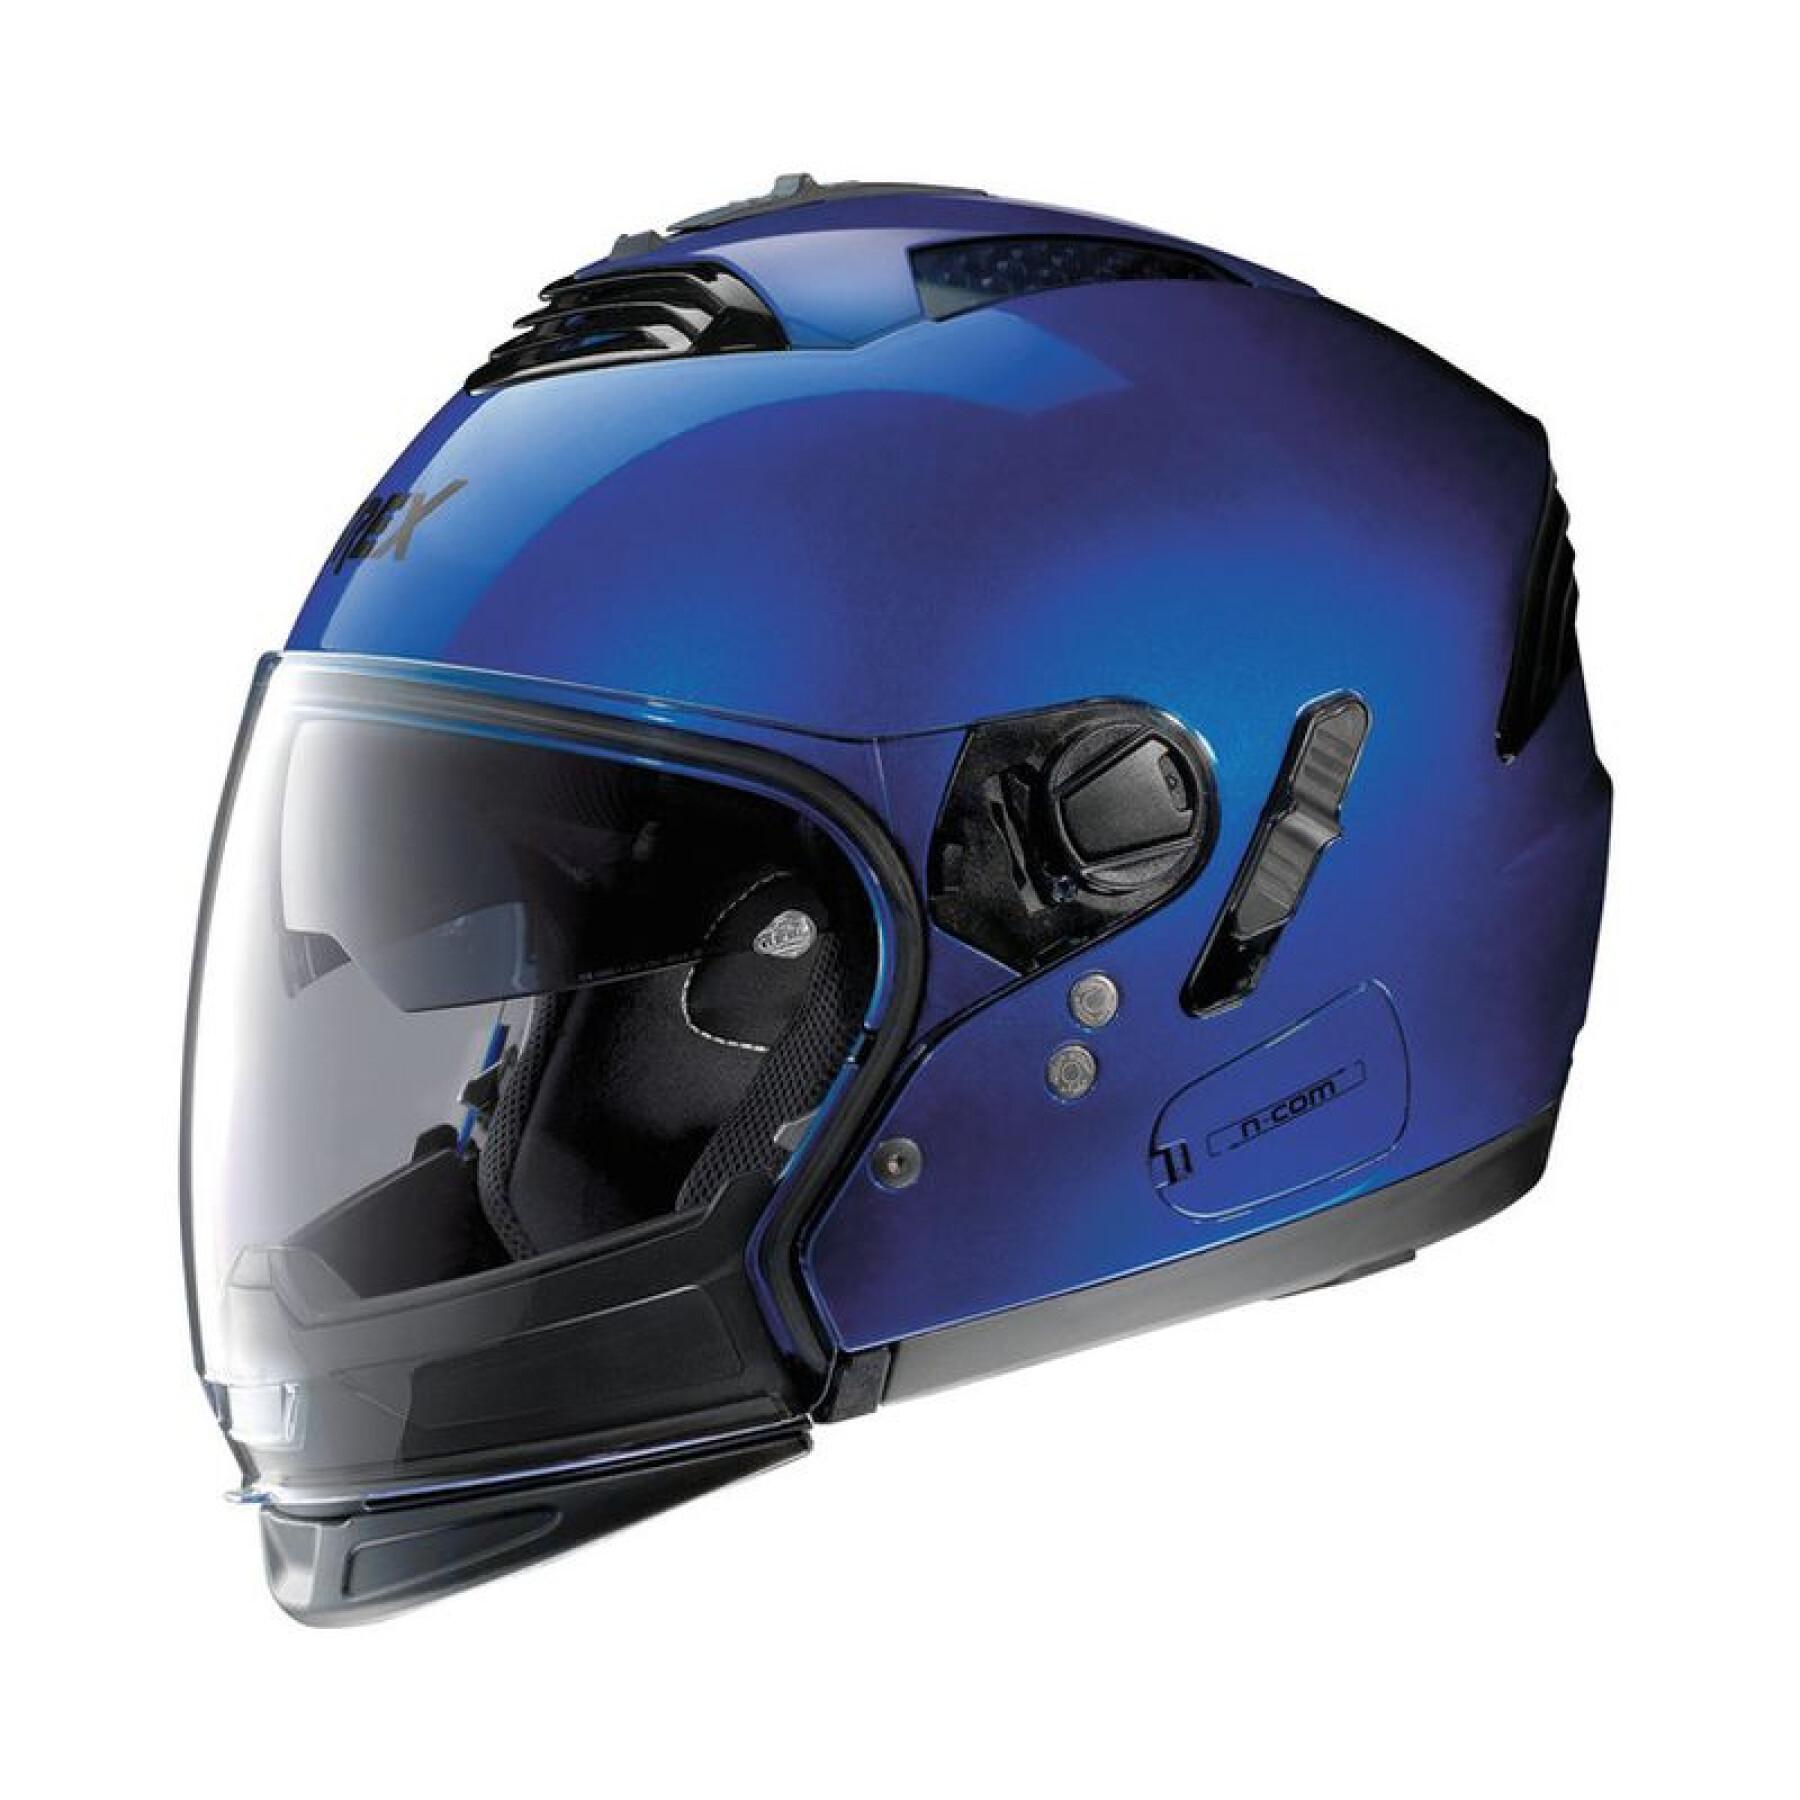 Helhjälm för motorcykel Grex G4.2 Pro Kinetic N-Com Cayman 30